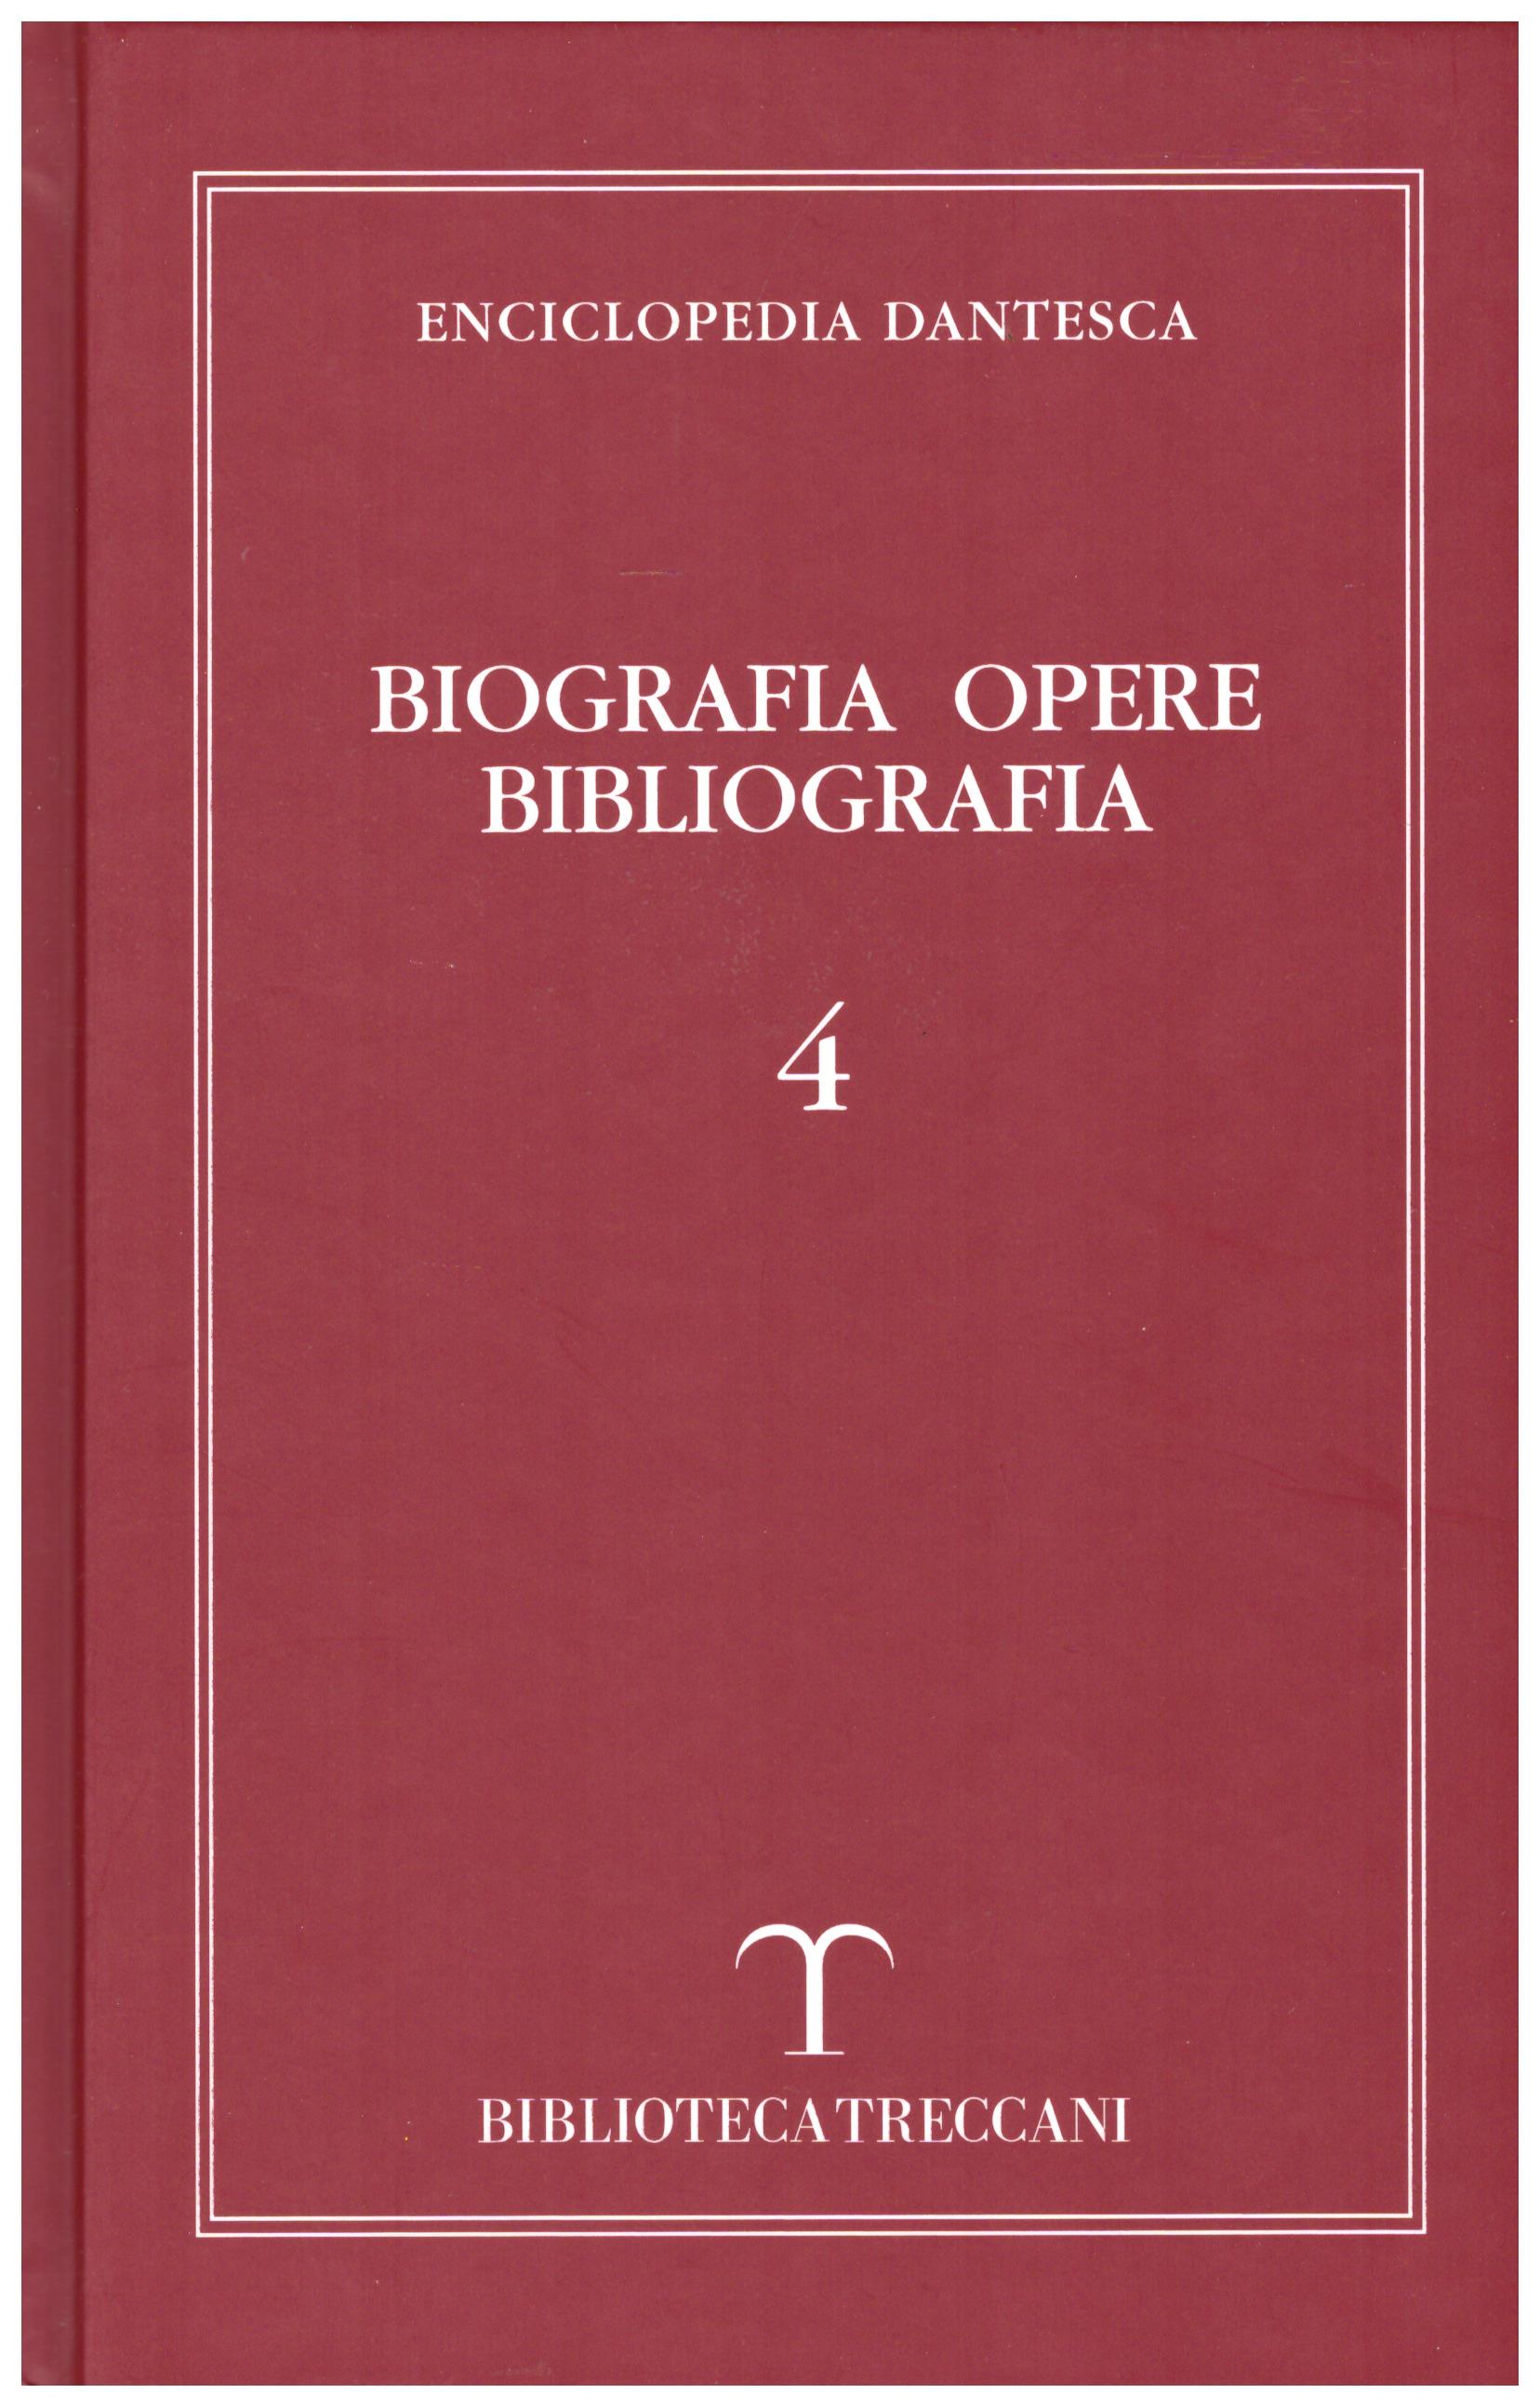 Titolo: Enciclopedia Dantesca, Biografia opere bibliografia 4    Autore: AA.VV.    Editore: Biblioteca Treccani